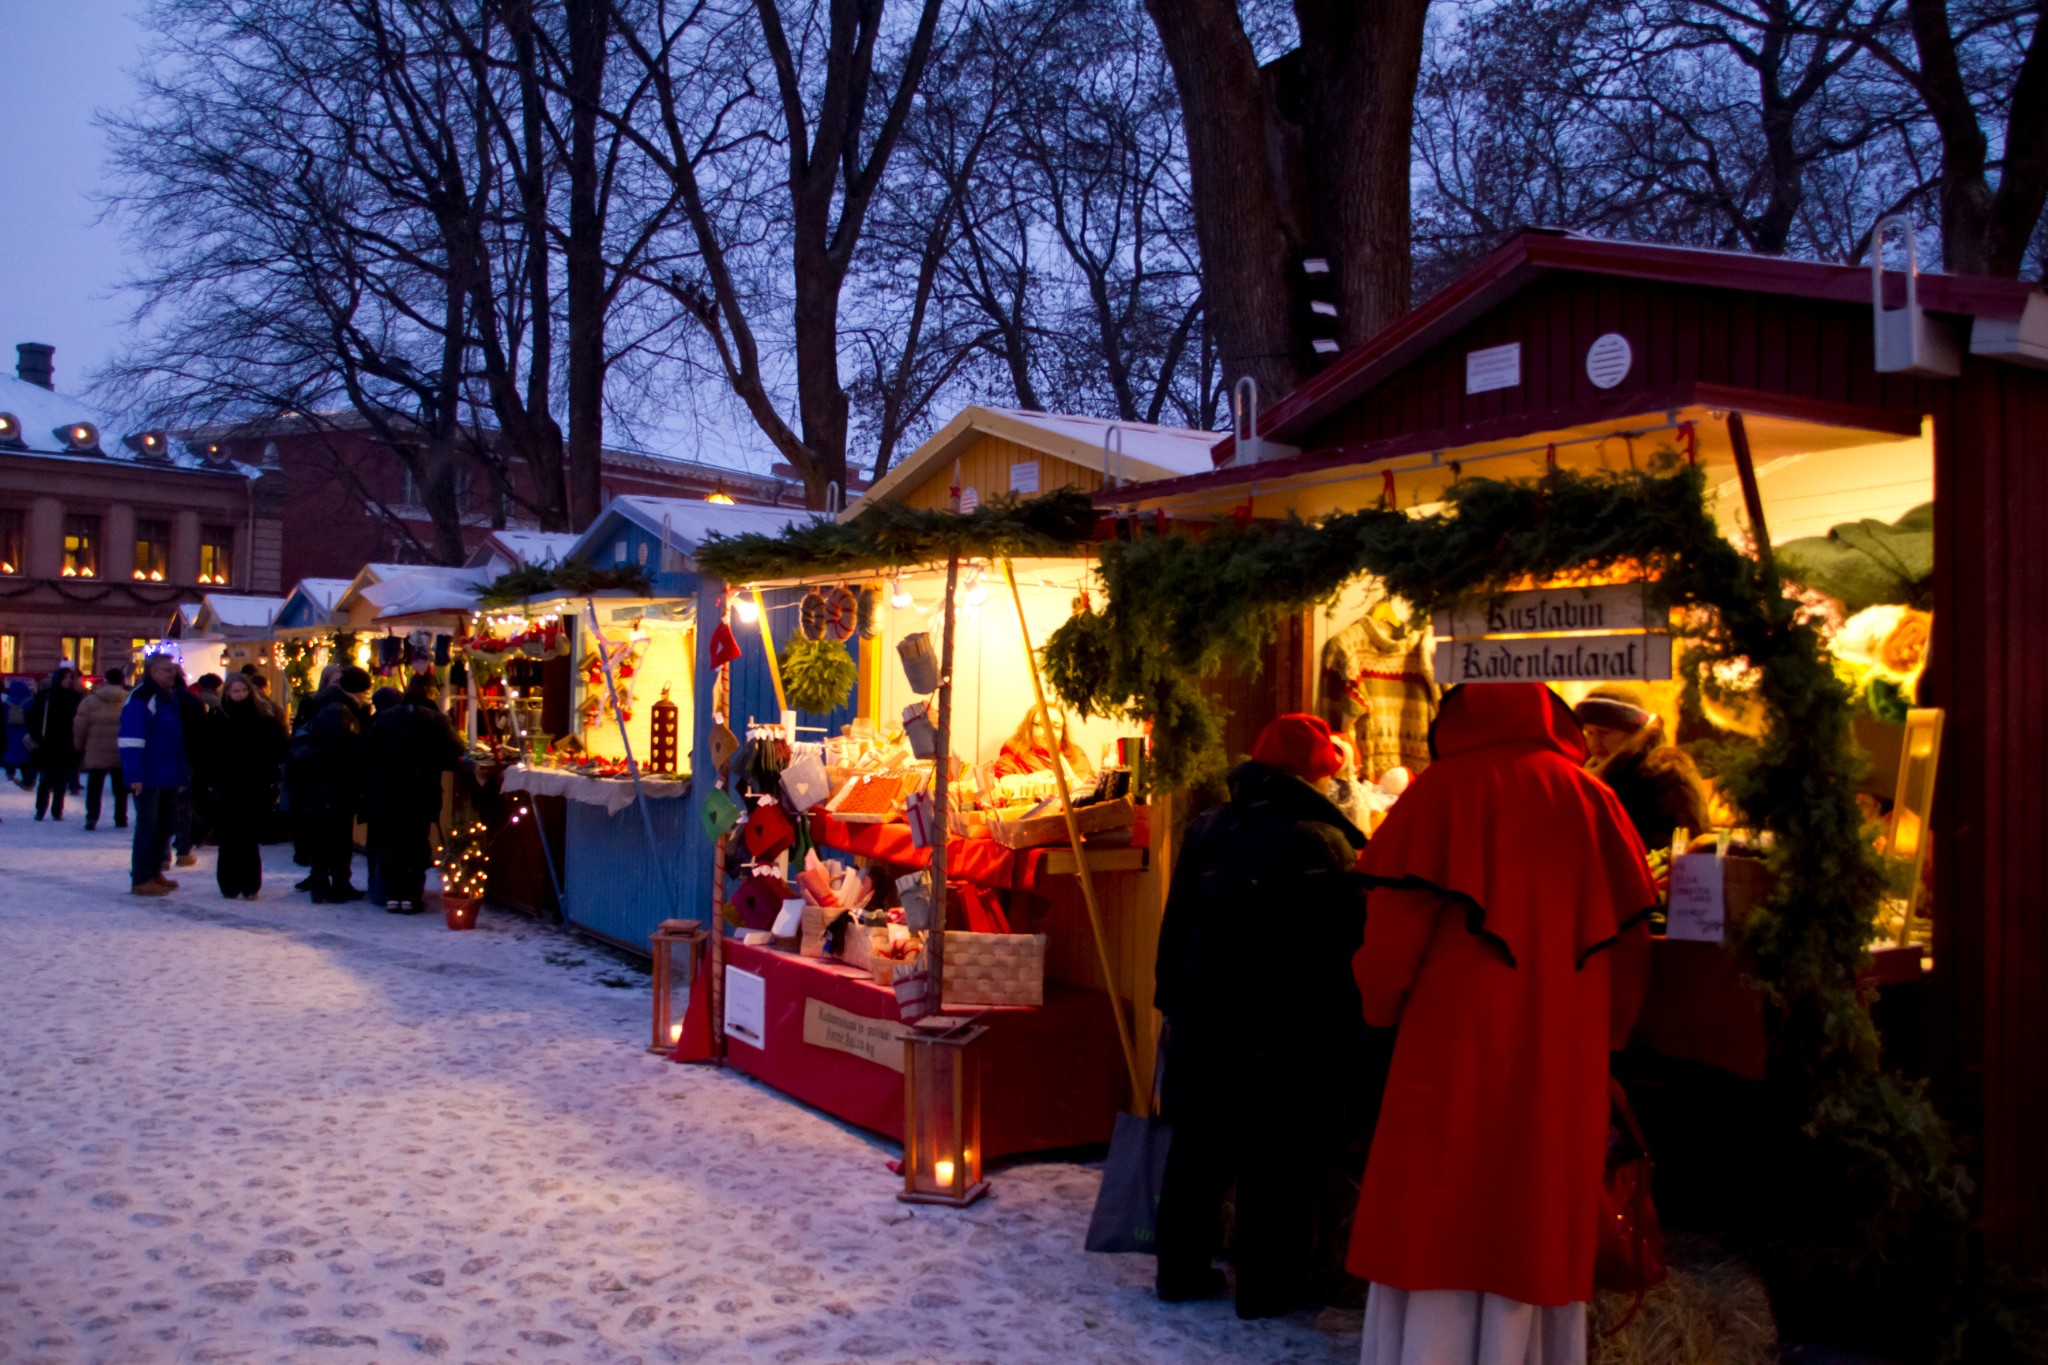 更新至19年11月|北欧五国圣诞集市大全,看好时间就出发